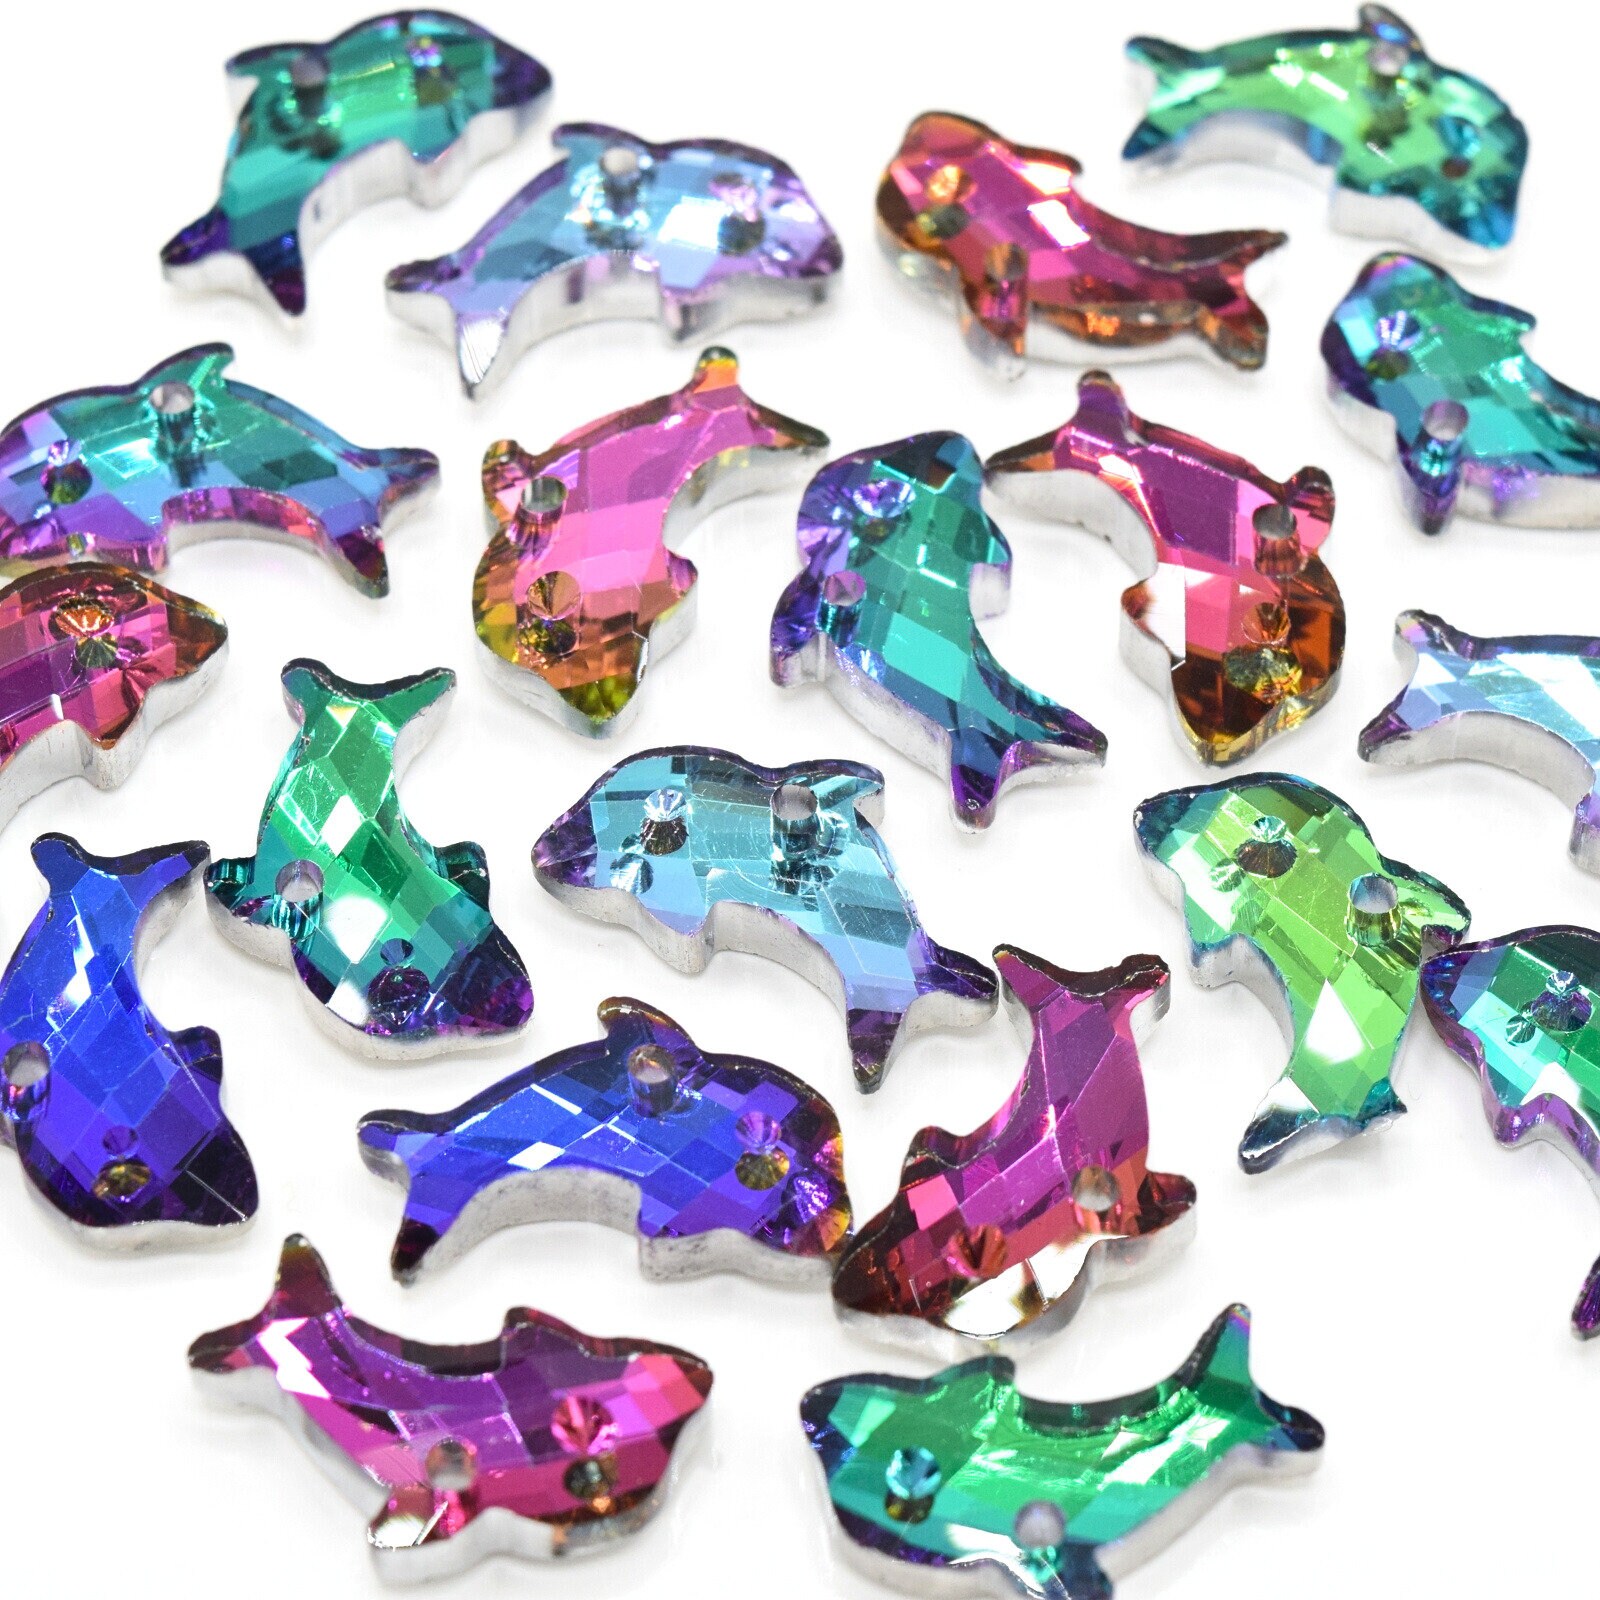 DIY Krafty Kids Dolphin Diamond Art Keychain Facet Bead Craft Kit